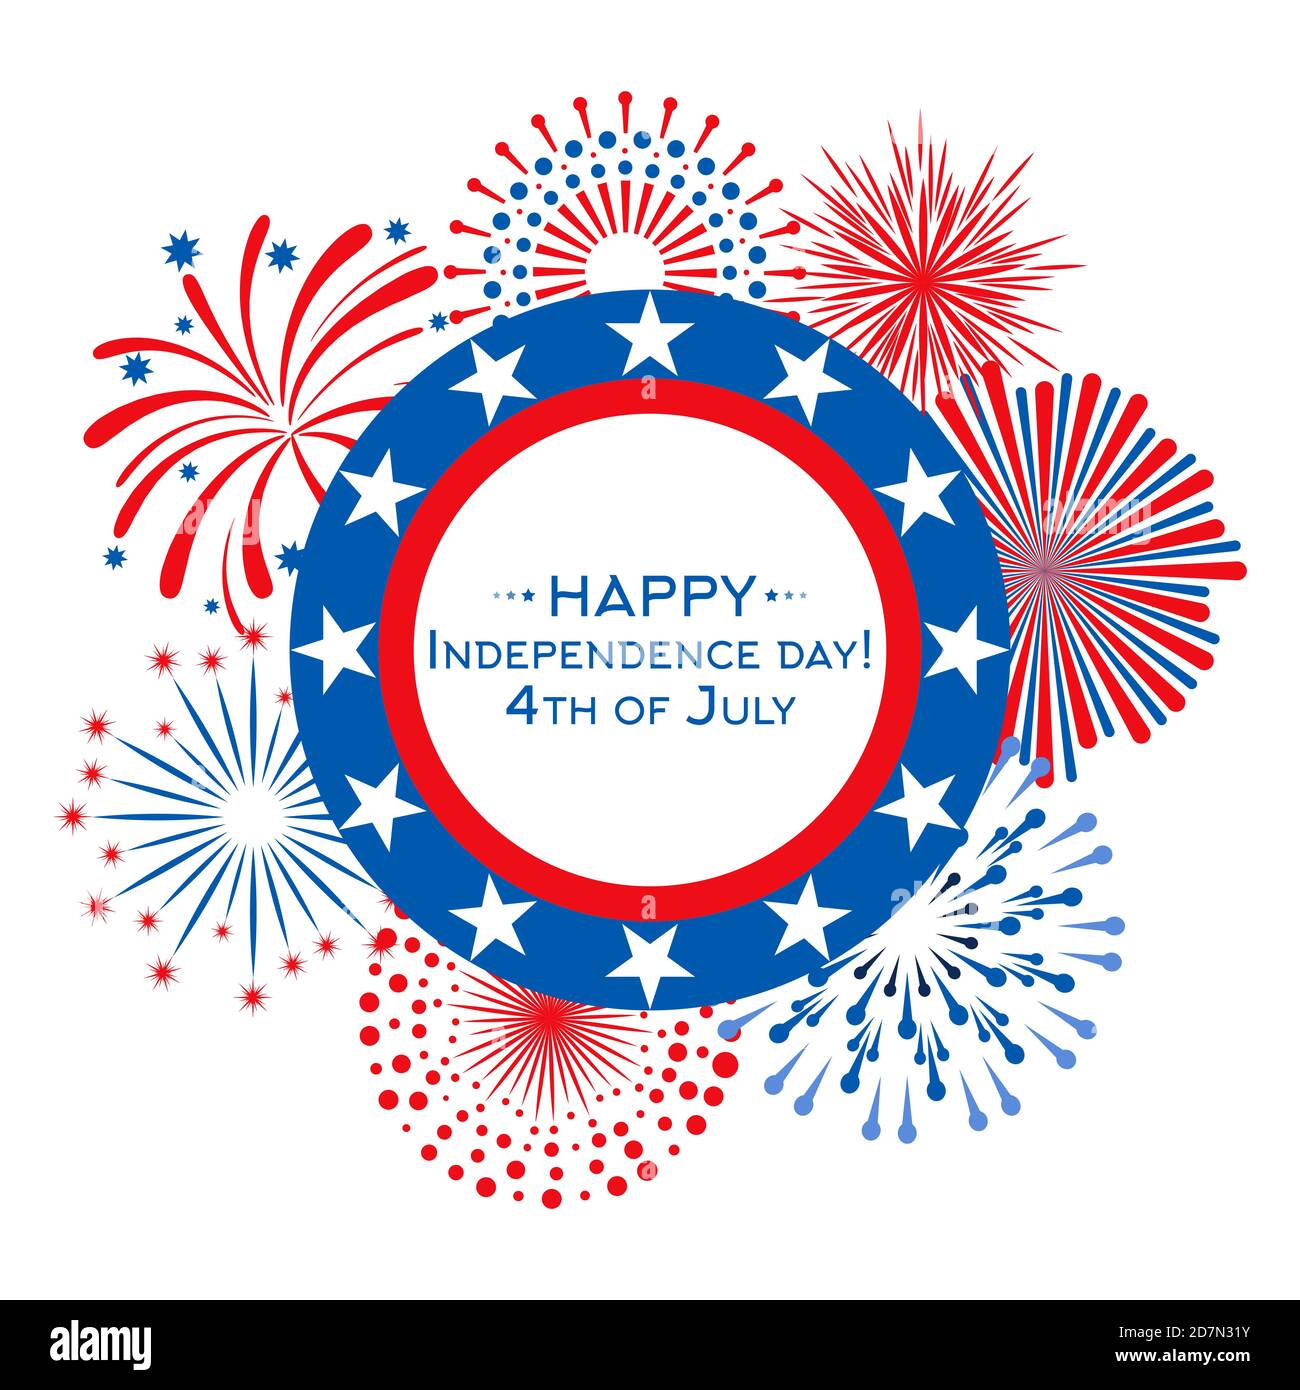 Happy Independence Day Vektorkarte mit Feuerwerk. Banner-Vorlage für den 4. Juli. Illustration des Unabhängigkeitstages des usa-Labels Stock Vektor